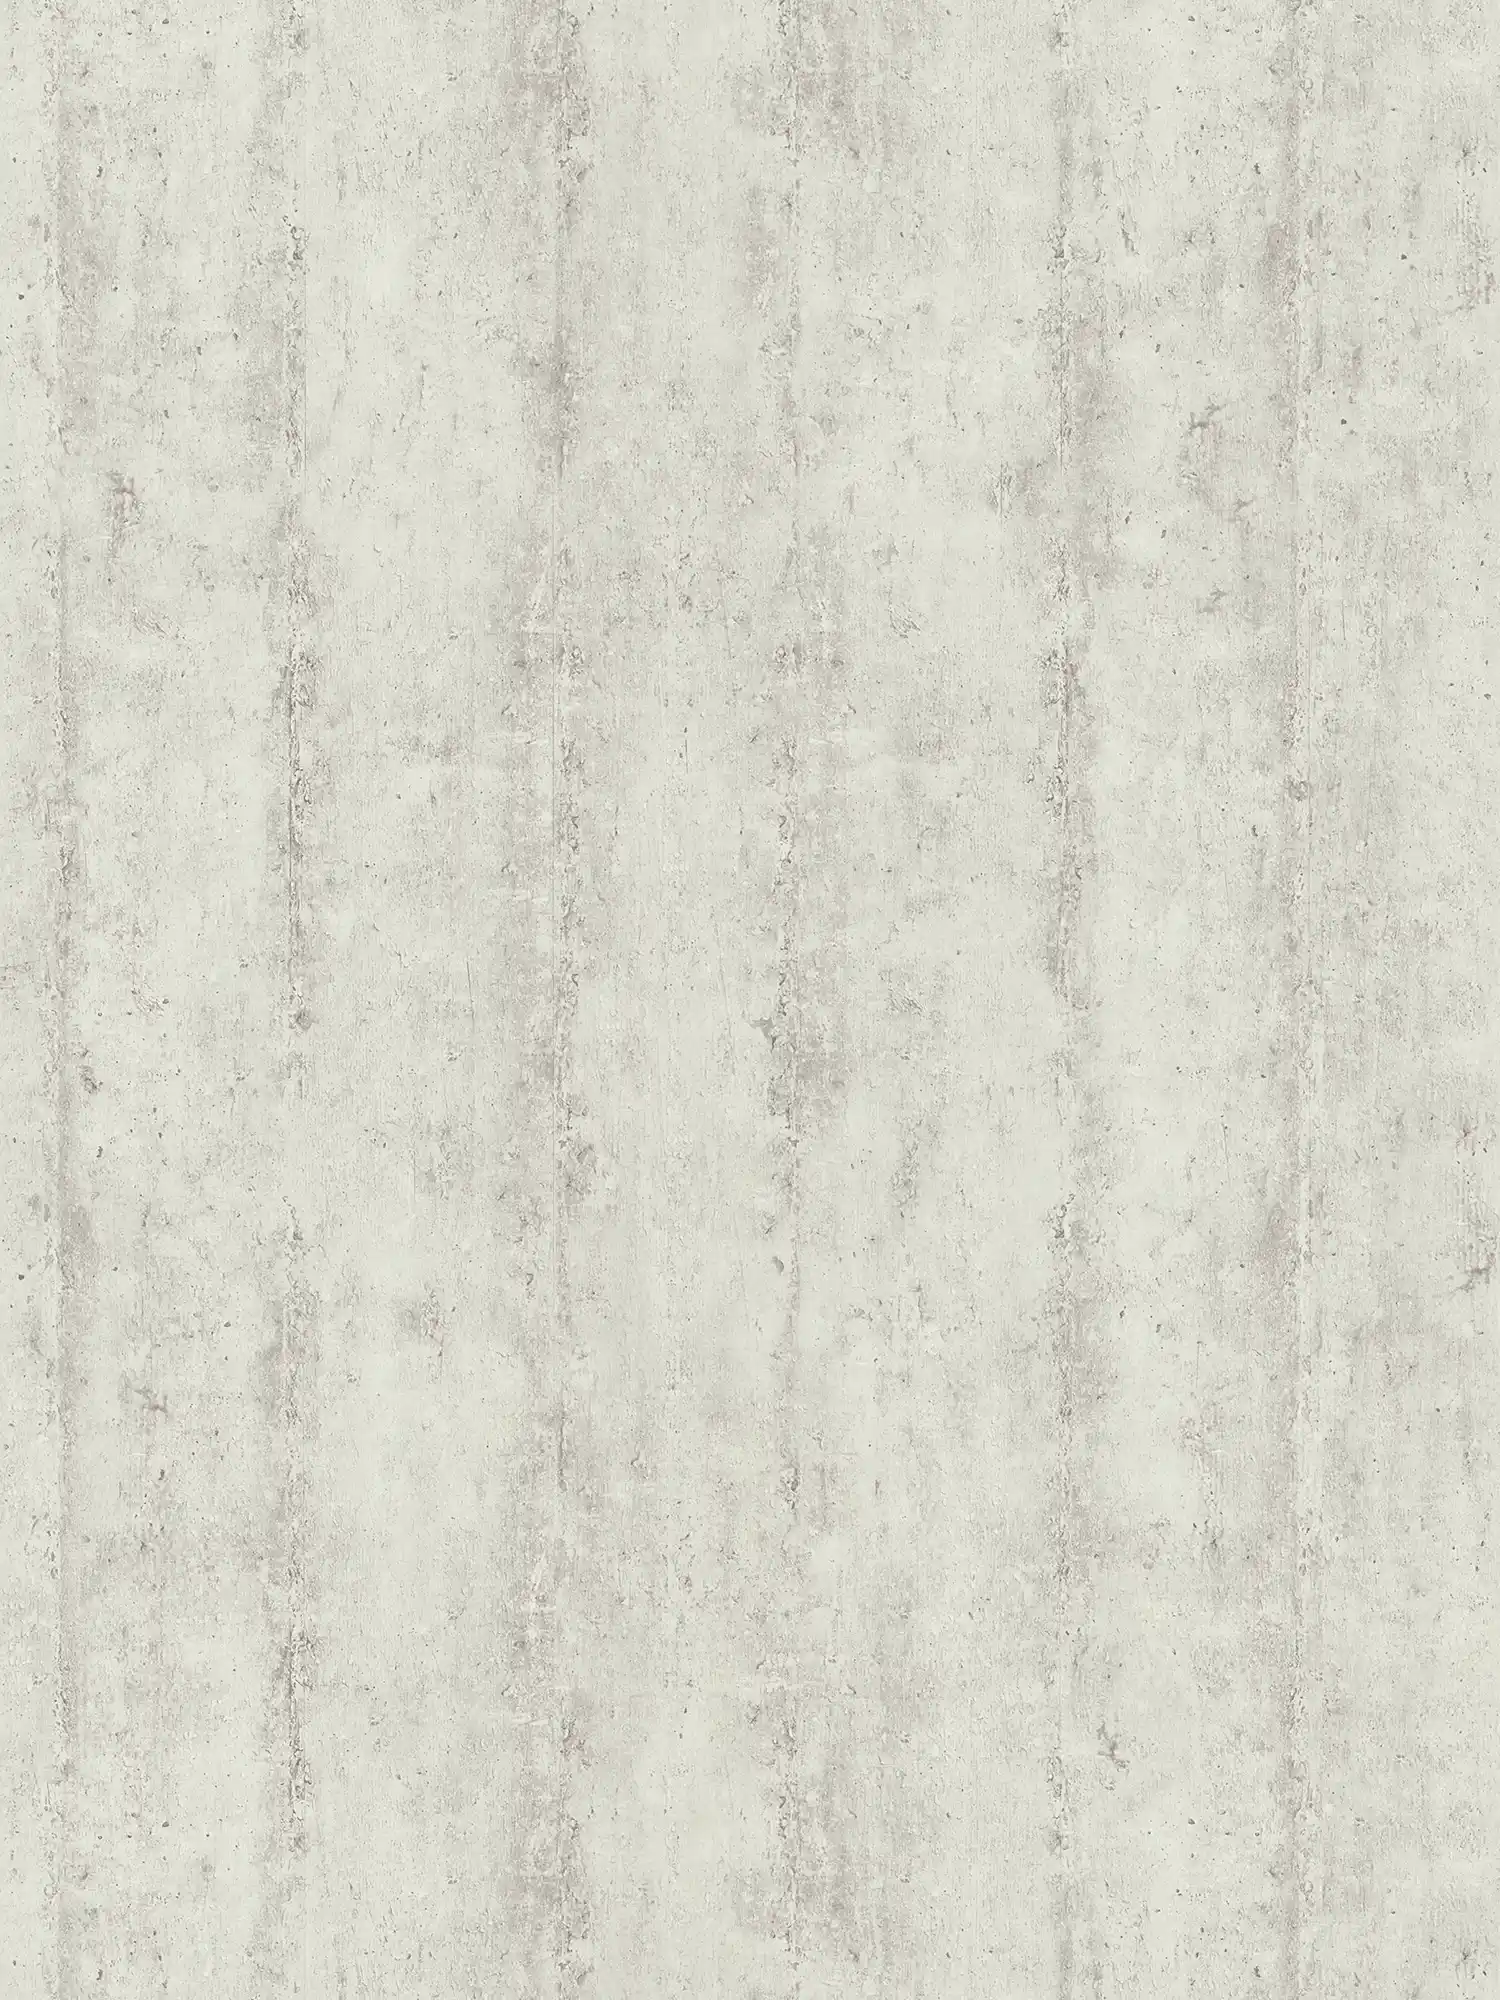 Vliesbehang met betonlook streeppatroon - beige, grijs
